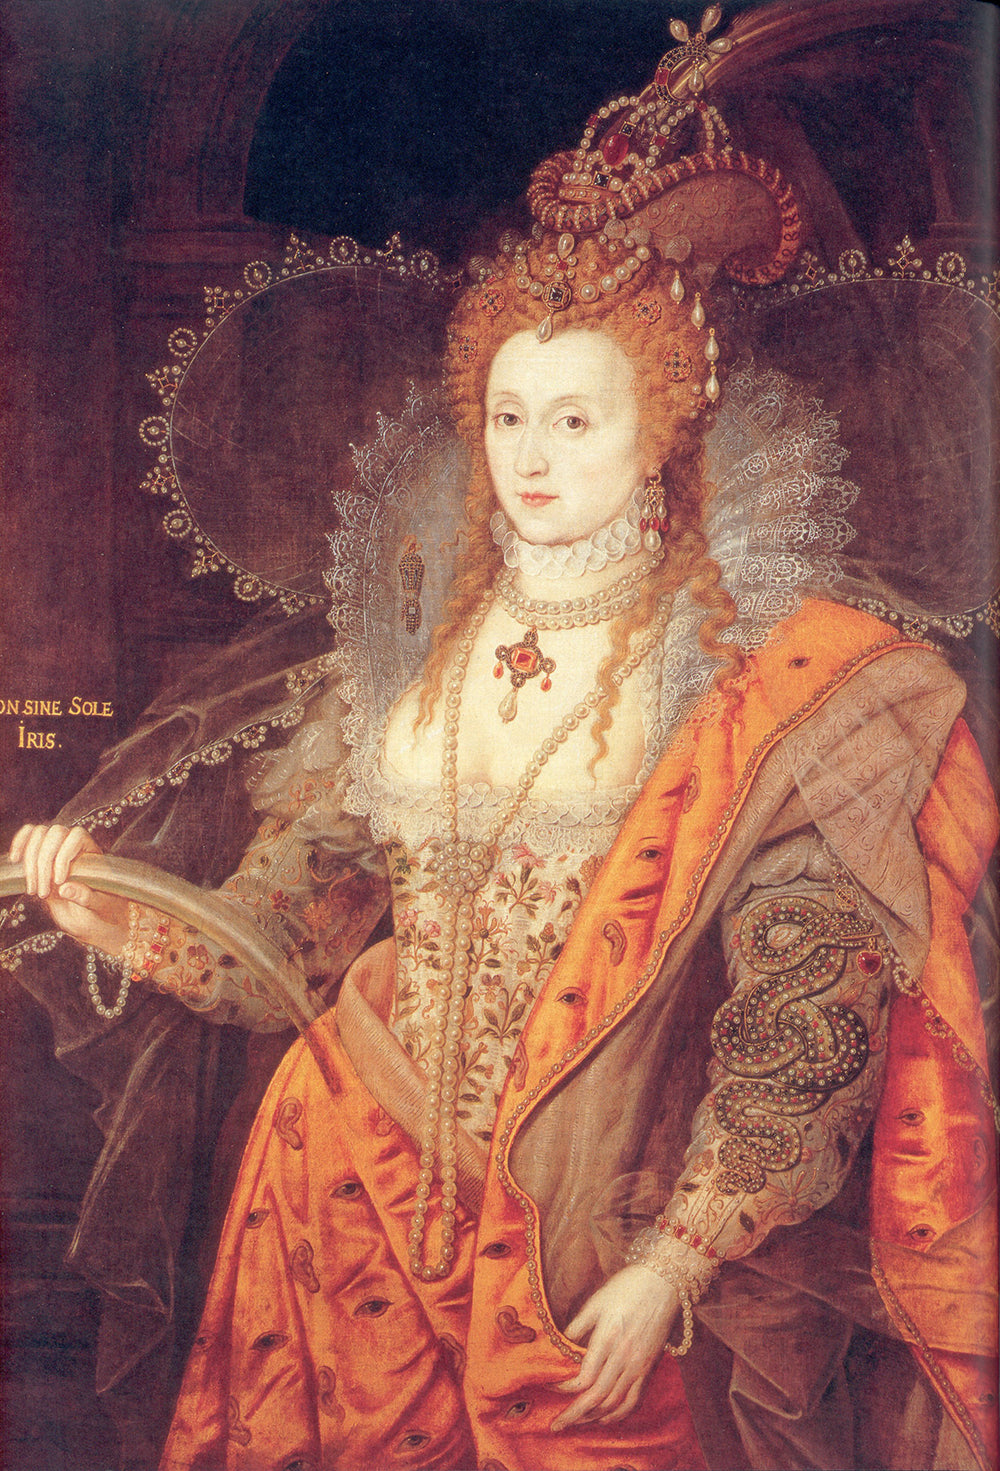 Pearls in Fine Art: Rainbow Portrait of Queen Elizabeth I